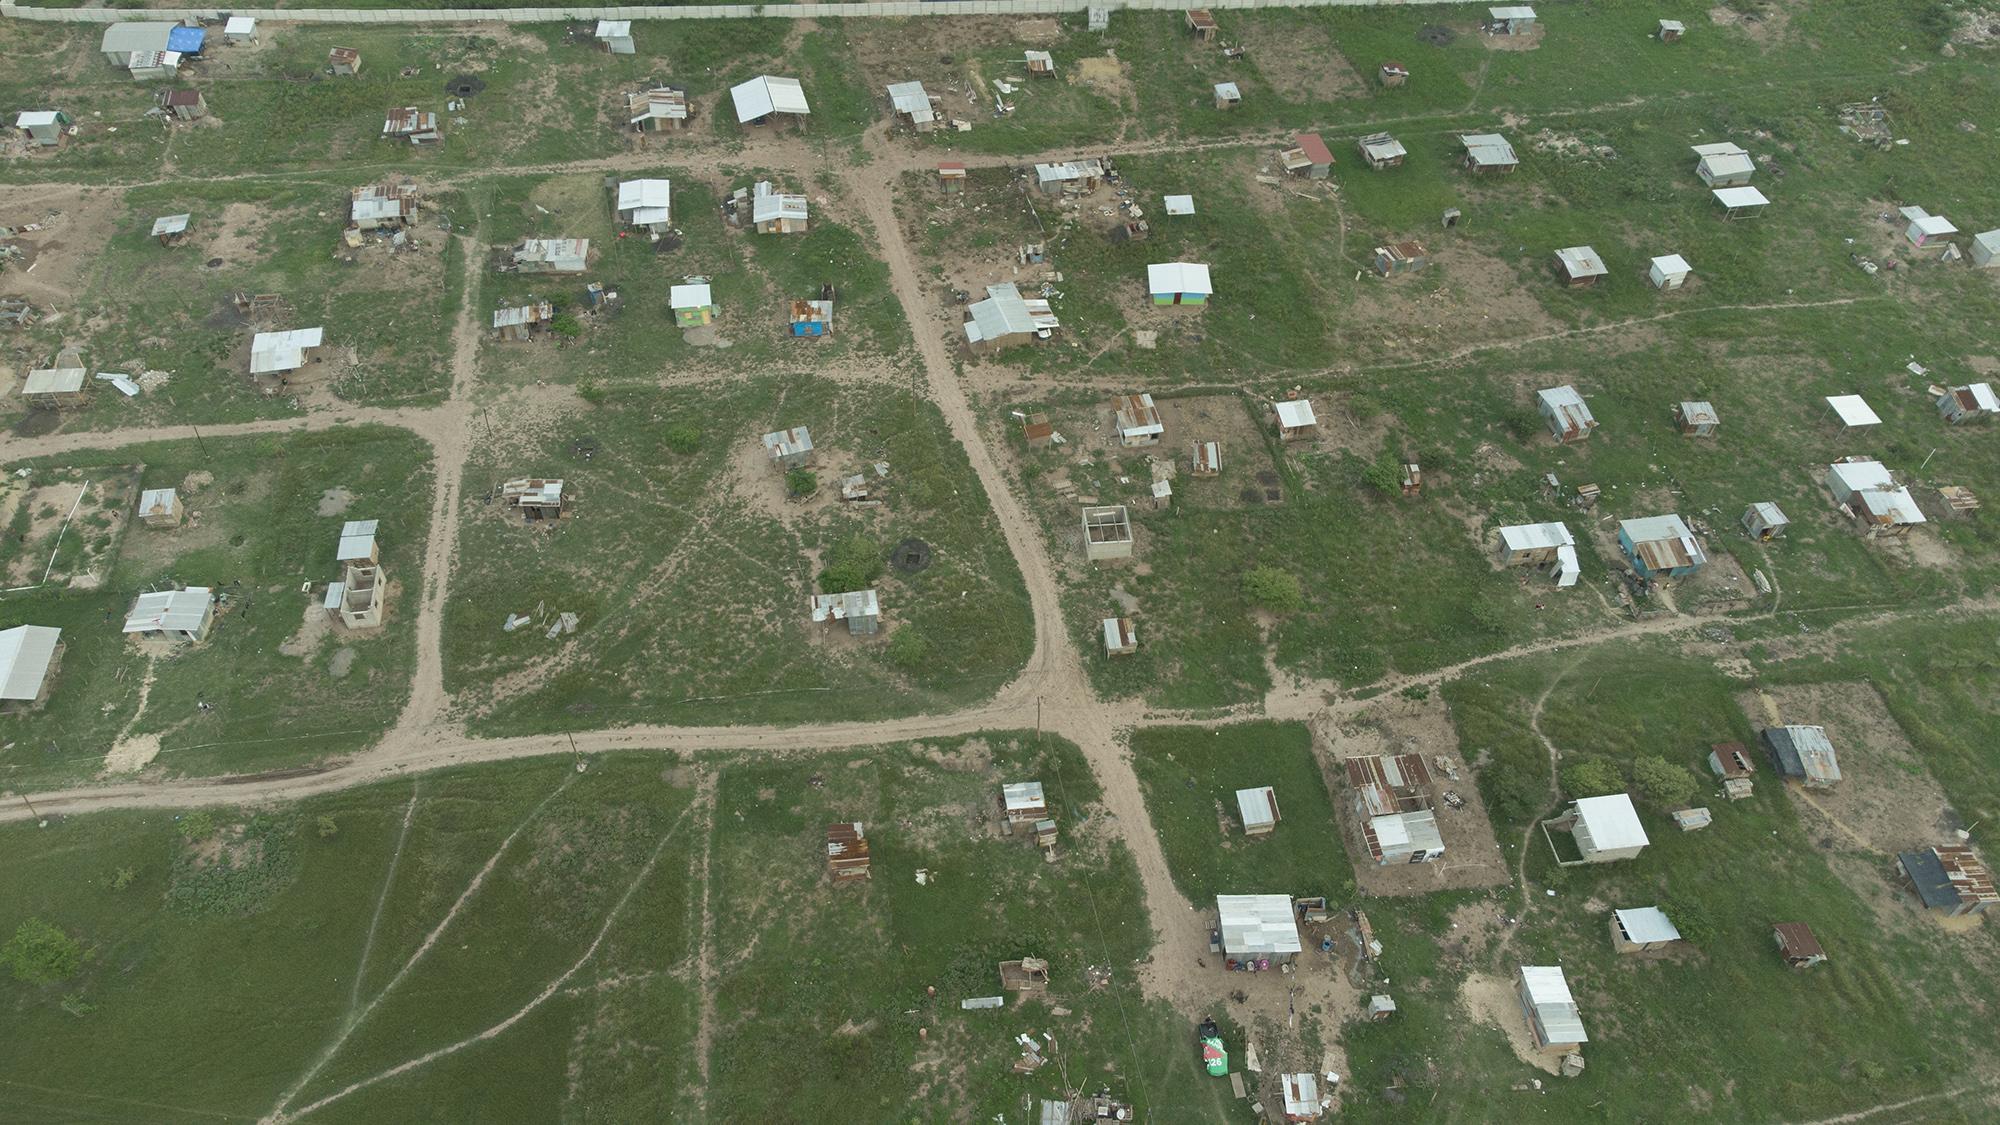 En la comunidad Nueva Esperanza viven unas 250 familias. El lugar fue ocupado por personas de distintos puntos del Valle de Sula. Foto de El Faro Carlos Barrera